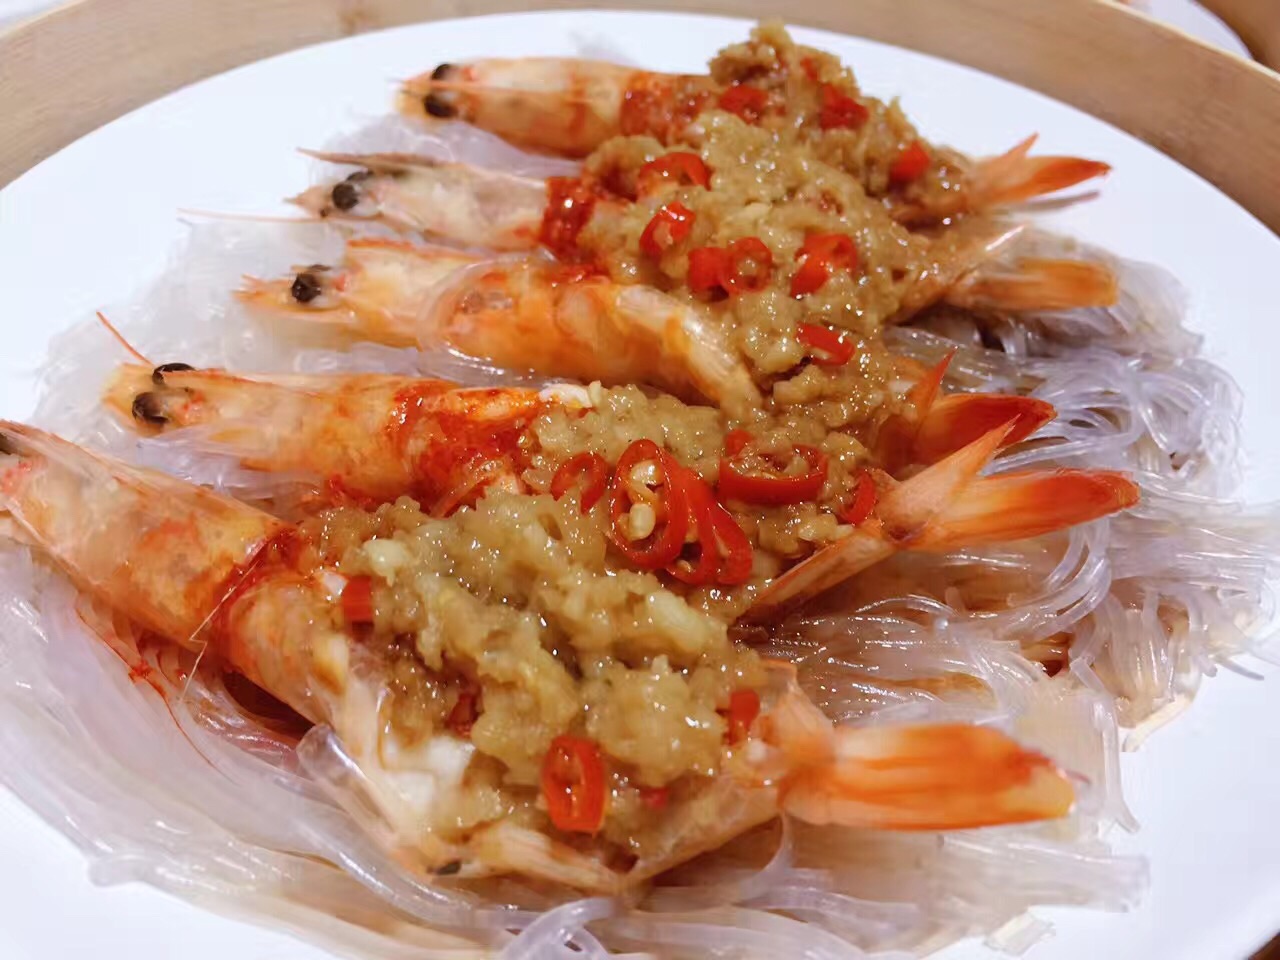 鲜虾粉丝煲,鲜虾粉丝煲的家常做法 - 美食杰鲜虾粉丝煲做法大全